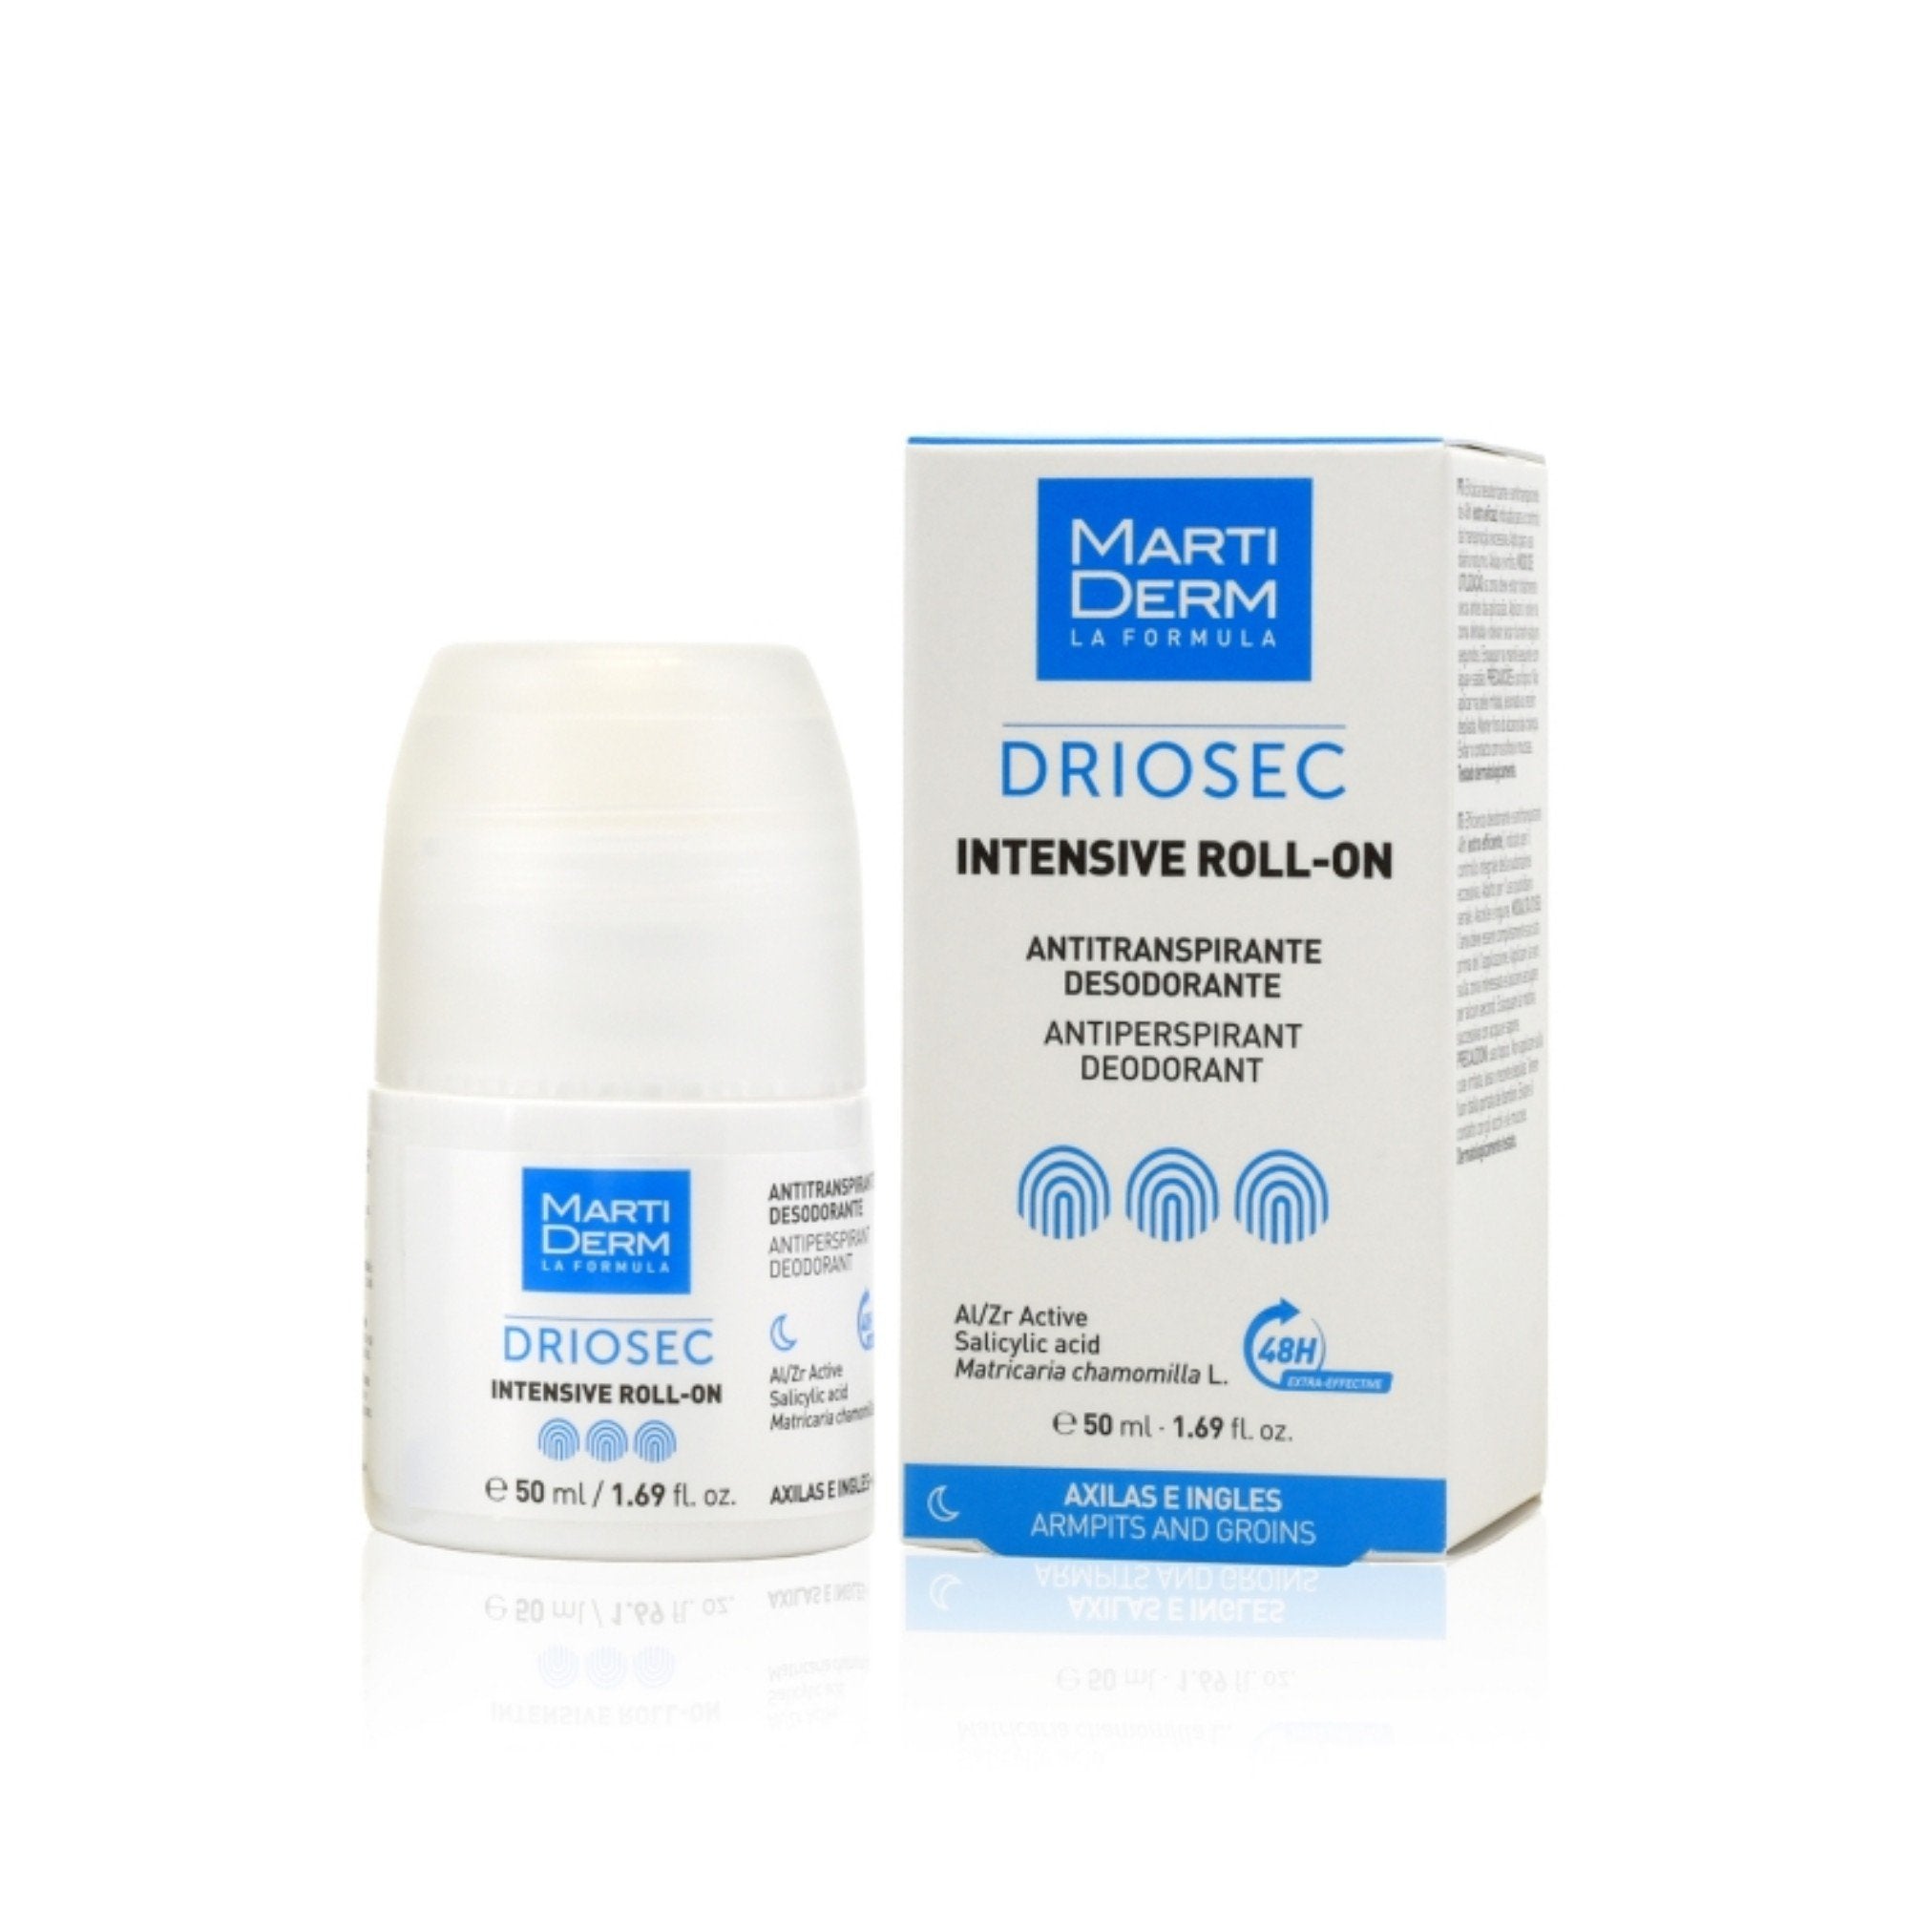 Endocare Cellage Anti-Aging Cream 50ml (1.69fl oz)